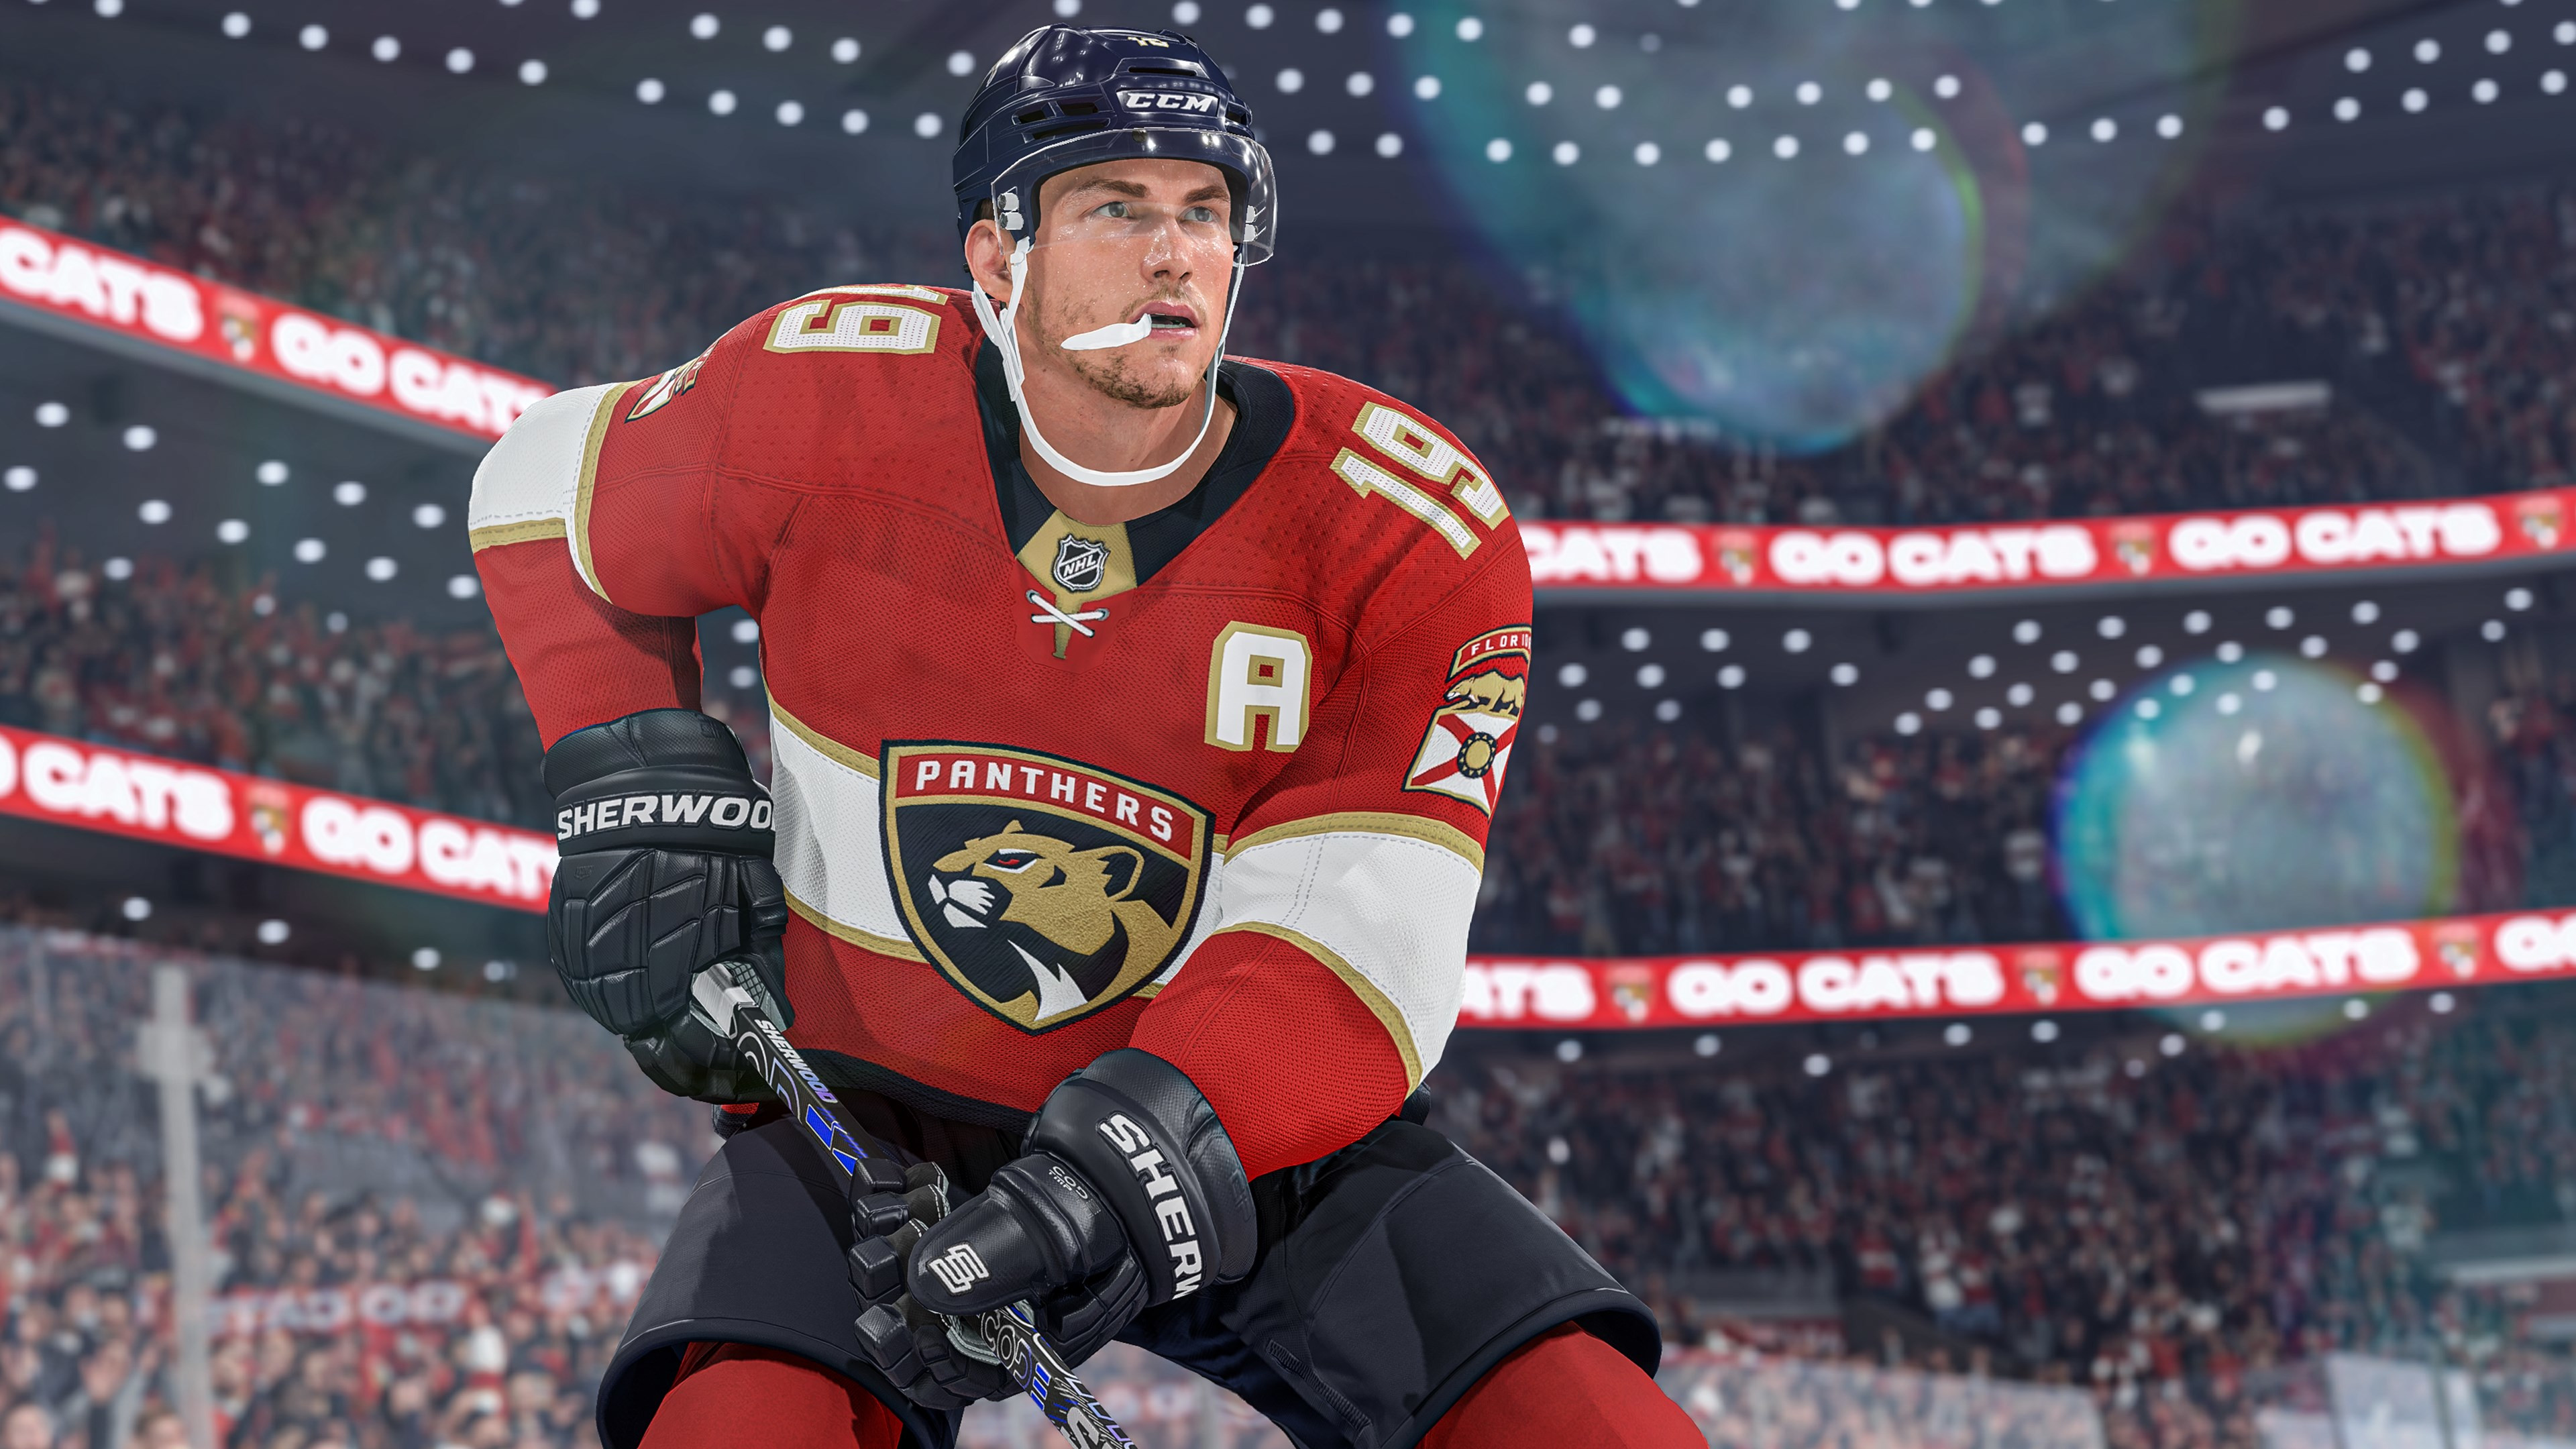 NHL 24 - Pre-order Bonus DLC Xbox Series X,S CD Key